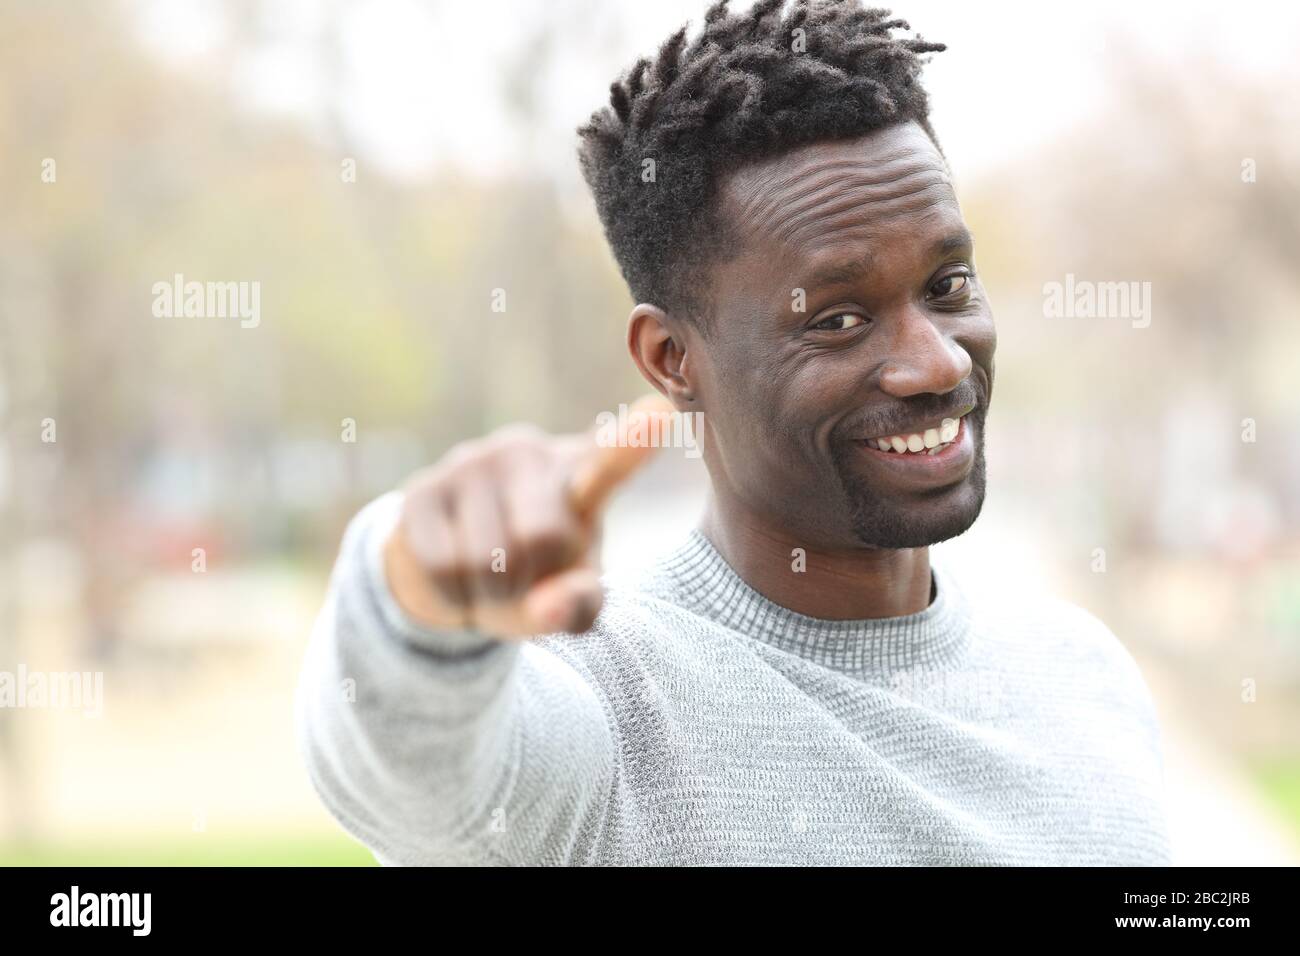 Heureux homme noir pointant à la caméra debout dans un parc Banque D'Images